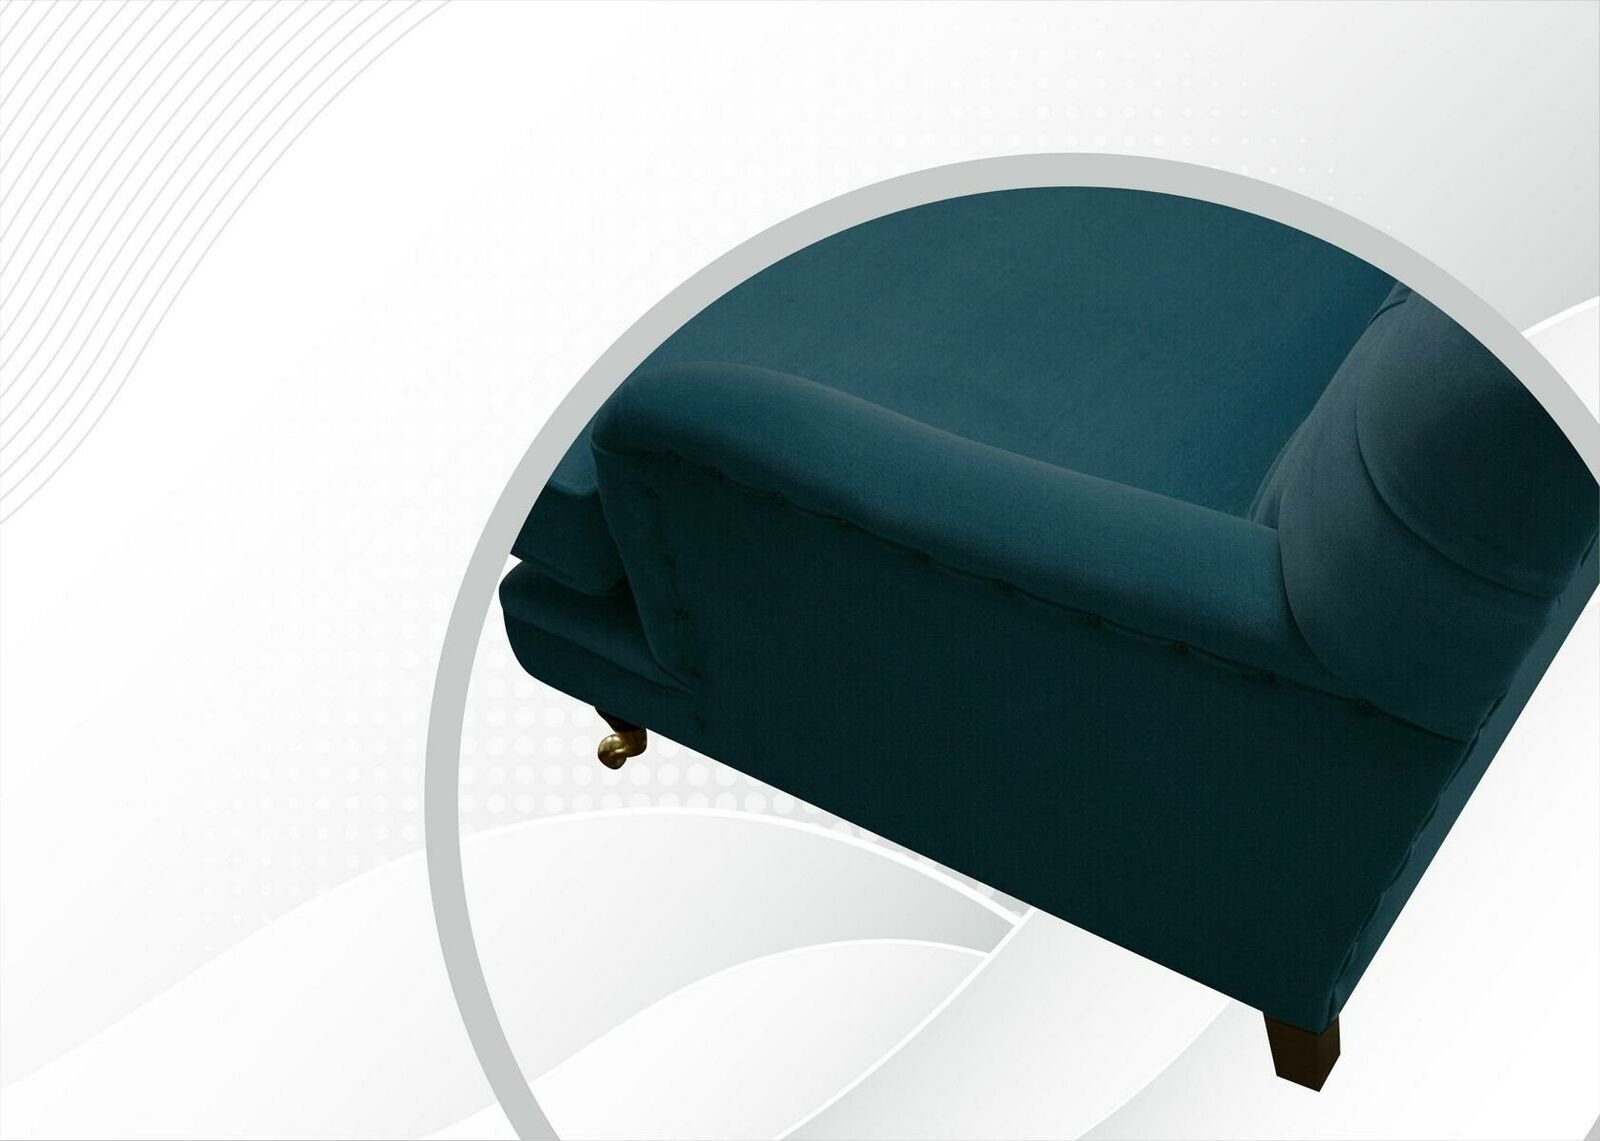 Stoff JVmoebel Chesterfield Design Couchen Sofa Polster Neu Chesterfield-Sofa, Wohnzimmer Textil Sofas Blau